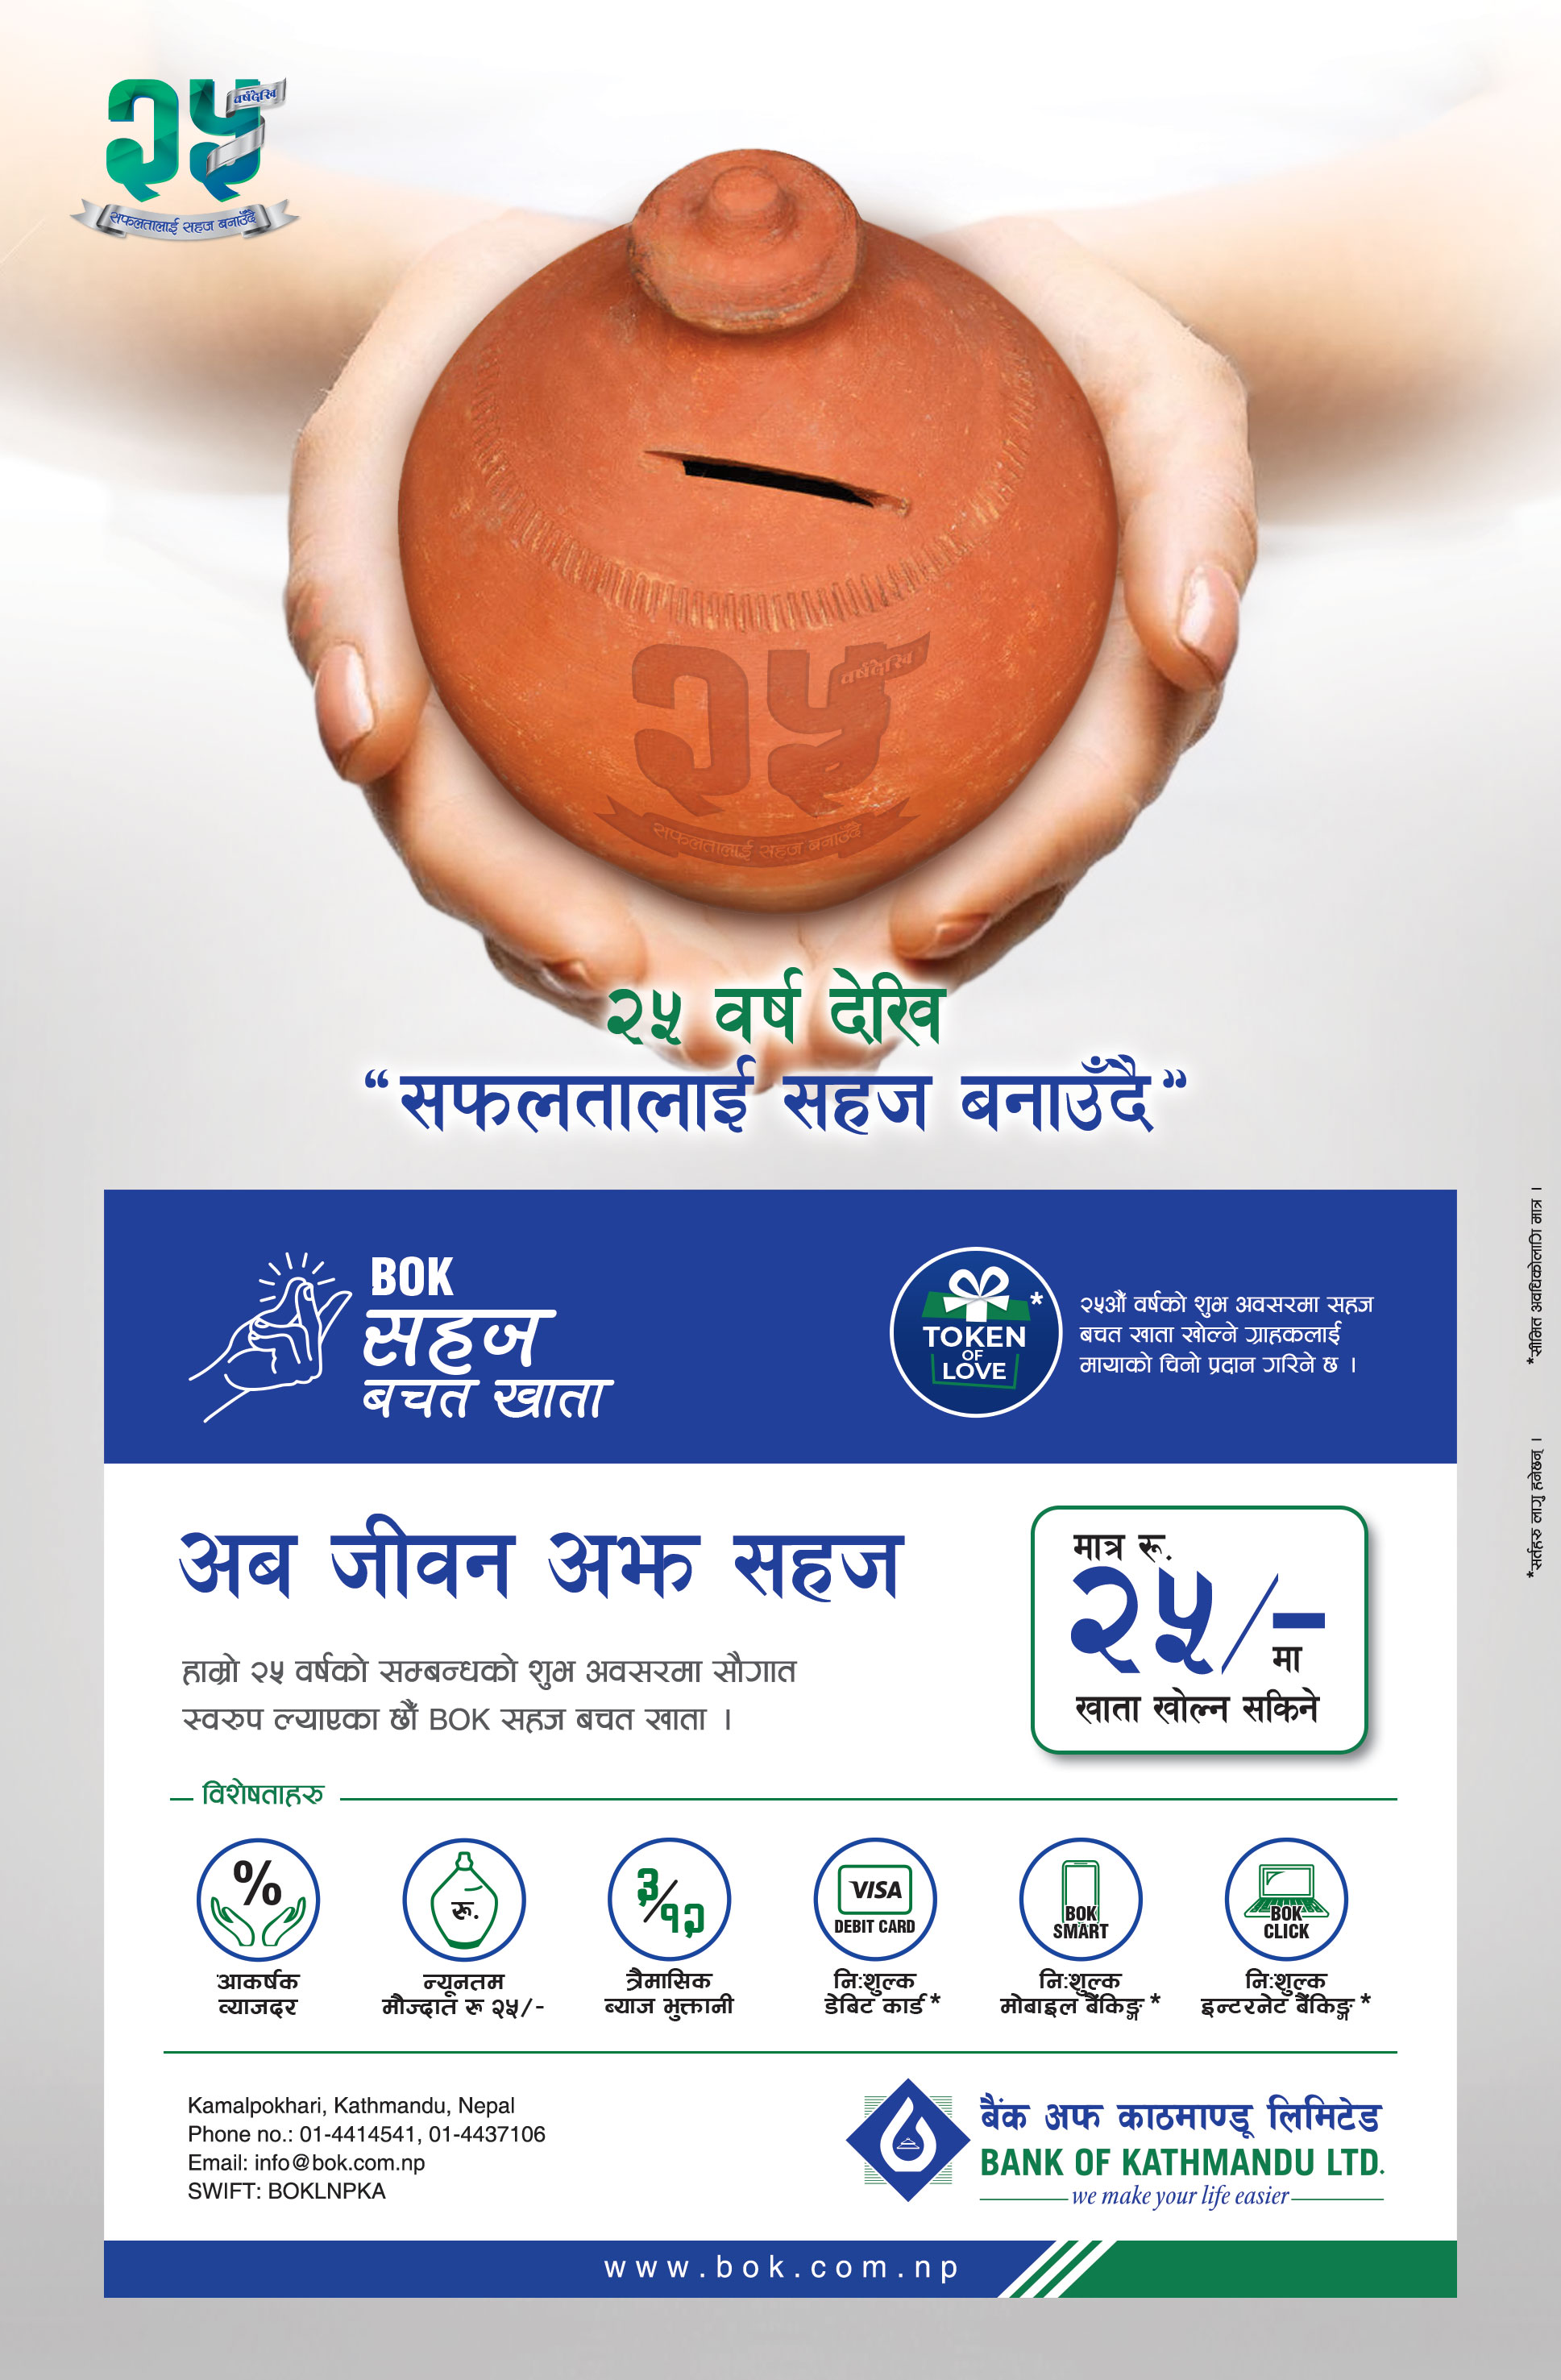 बैंक अफ काठमाण्डू लिमिटेडको बिओके  सहज बचत खाता सार्वजनिक